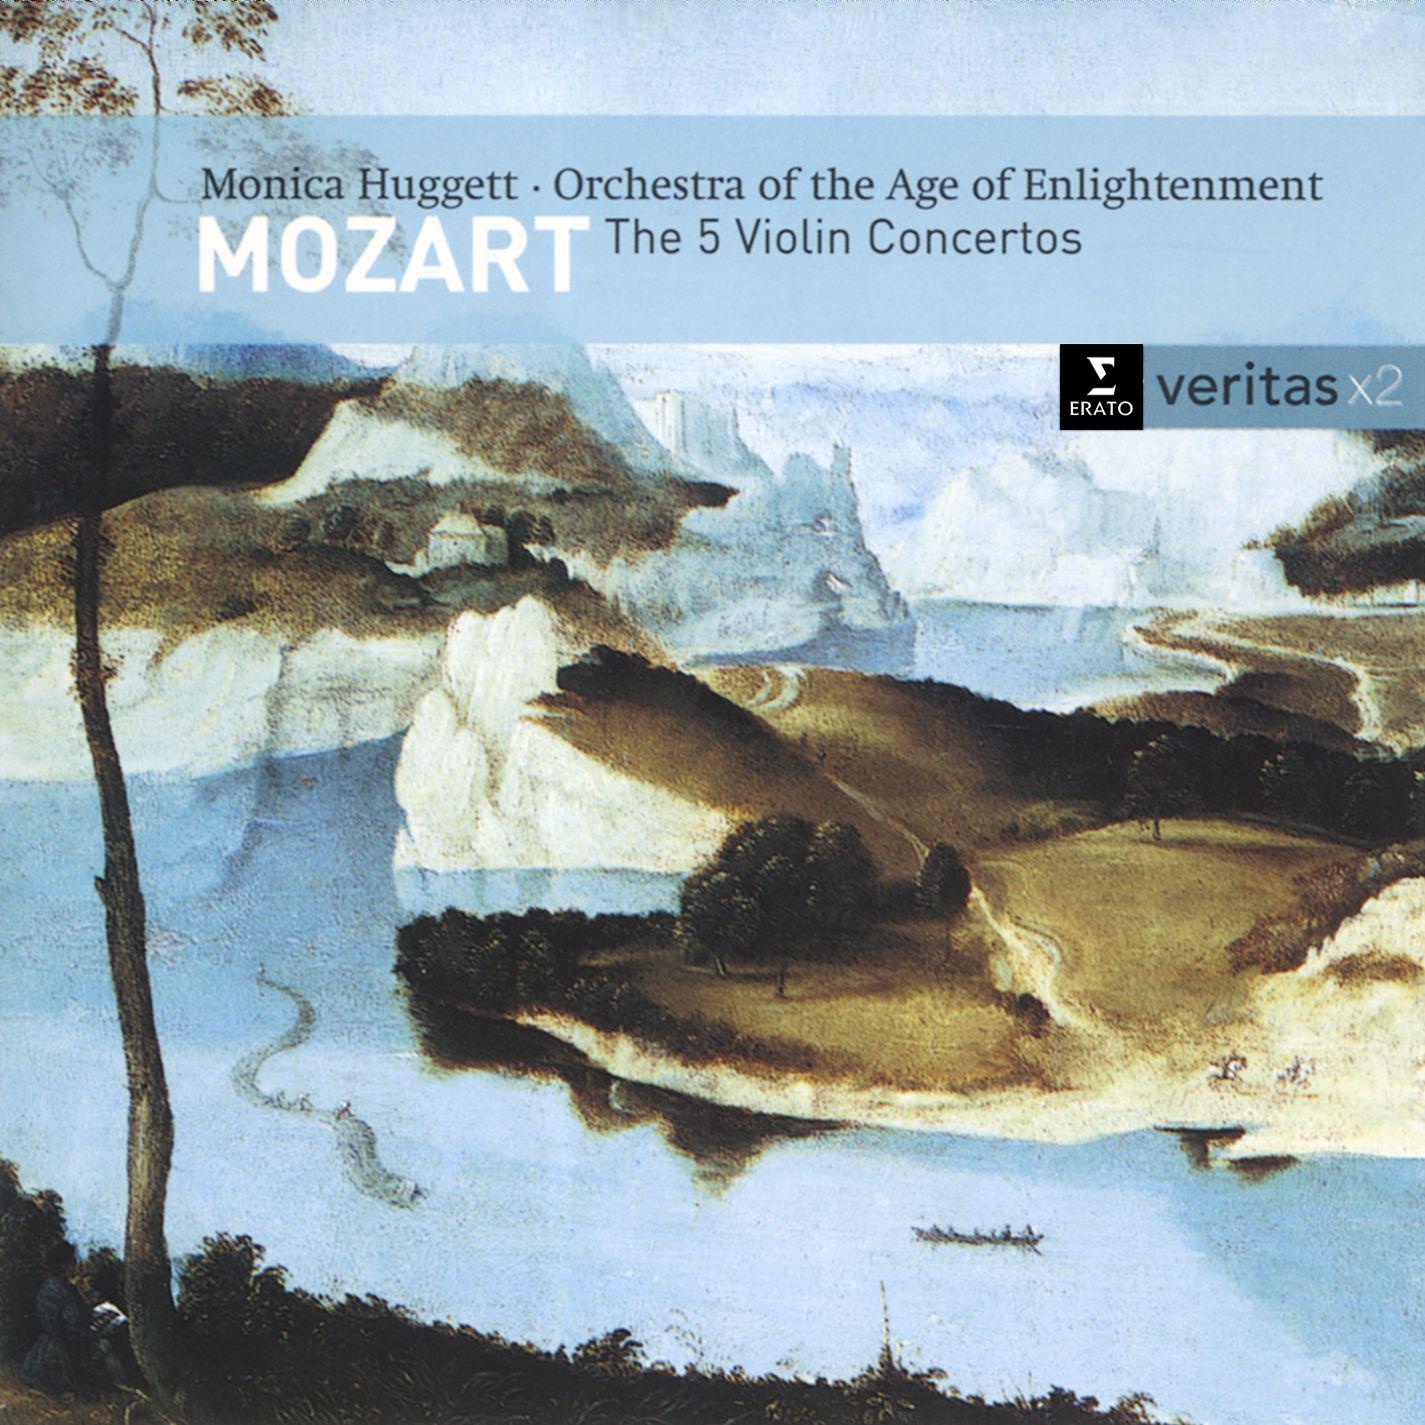 Violin Concerto No. 1 in B flat major K207: III. Presto